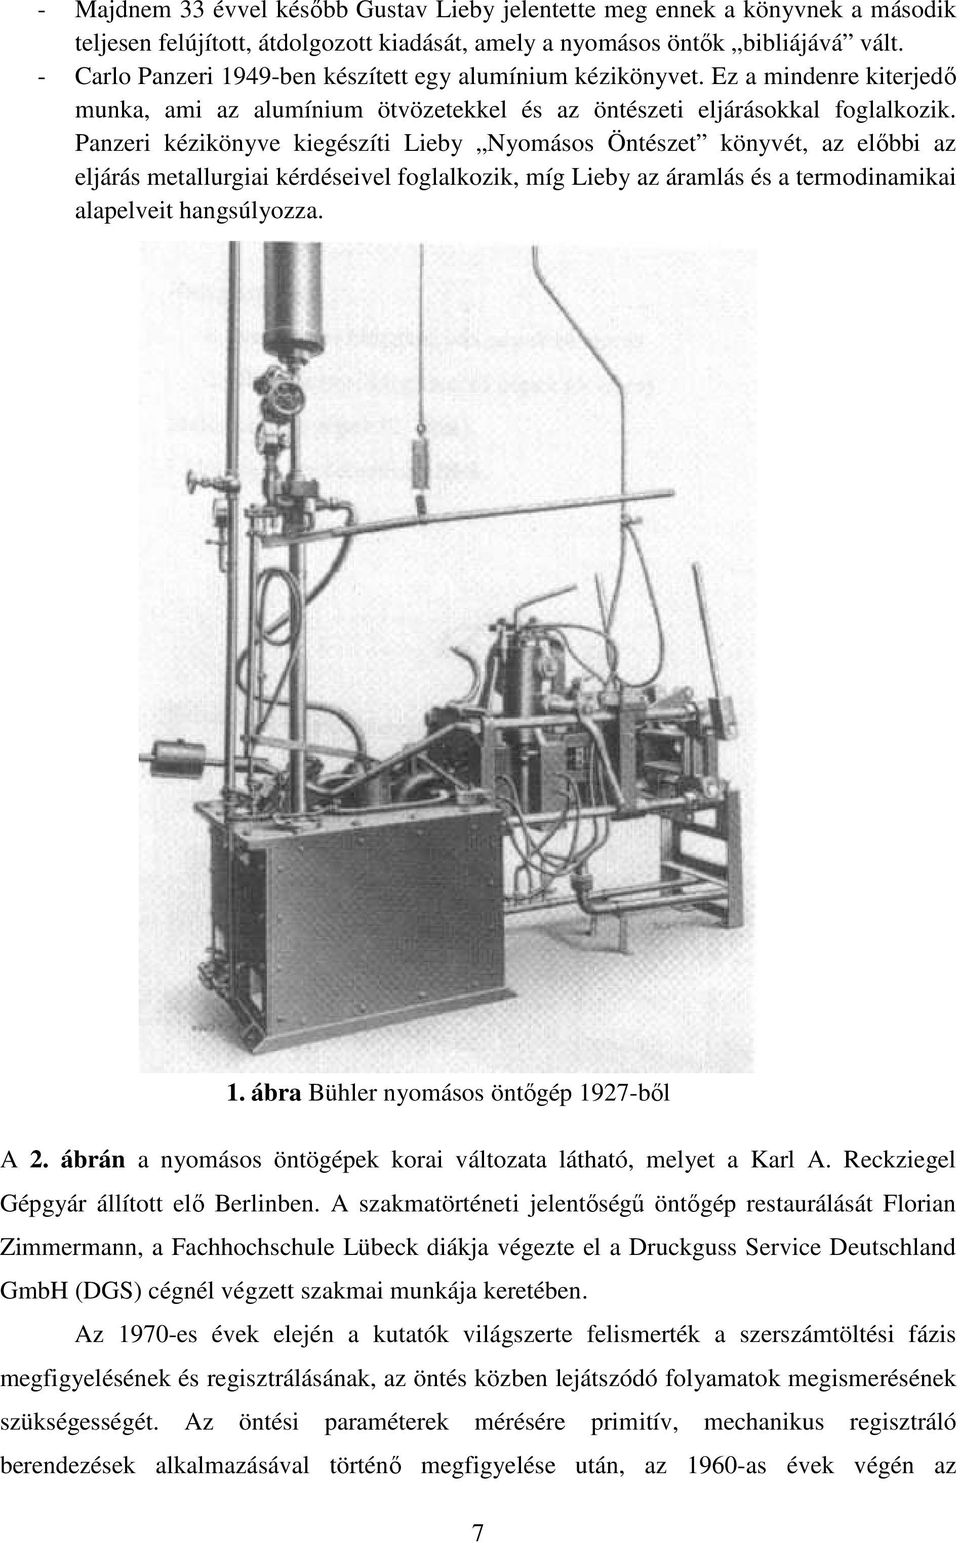 Panzeri kézikönyve kiegészíti Lieby Nyomásos Öntészet könyvét, az előbbi az eljárás metallurgiai kérdéseivel foglalkozik, míg Lieby az áramlás és a termodinamikai alapelveit hangsúlyozza. 1.